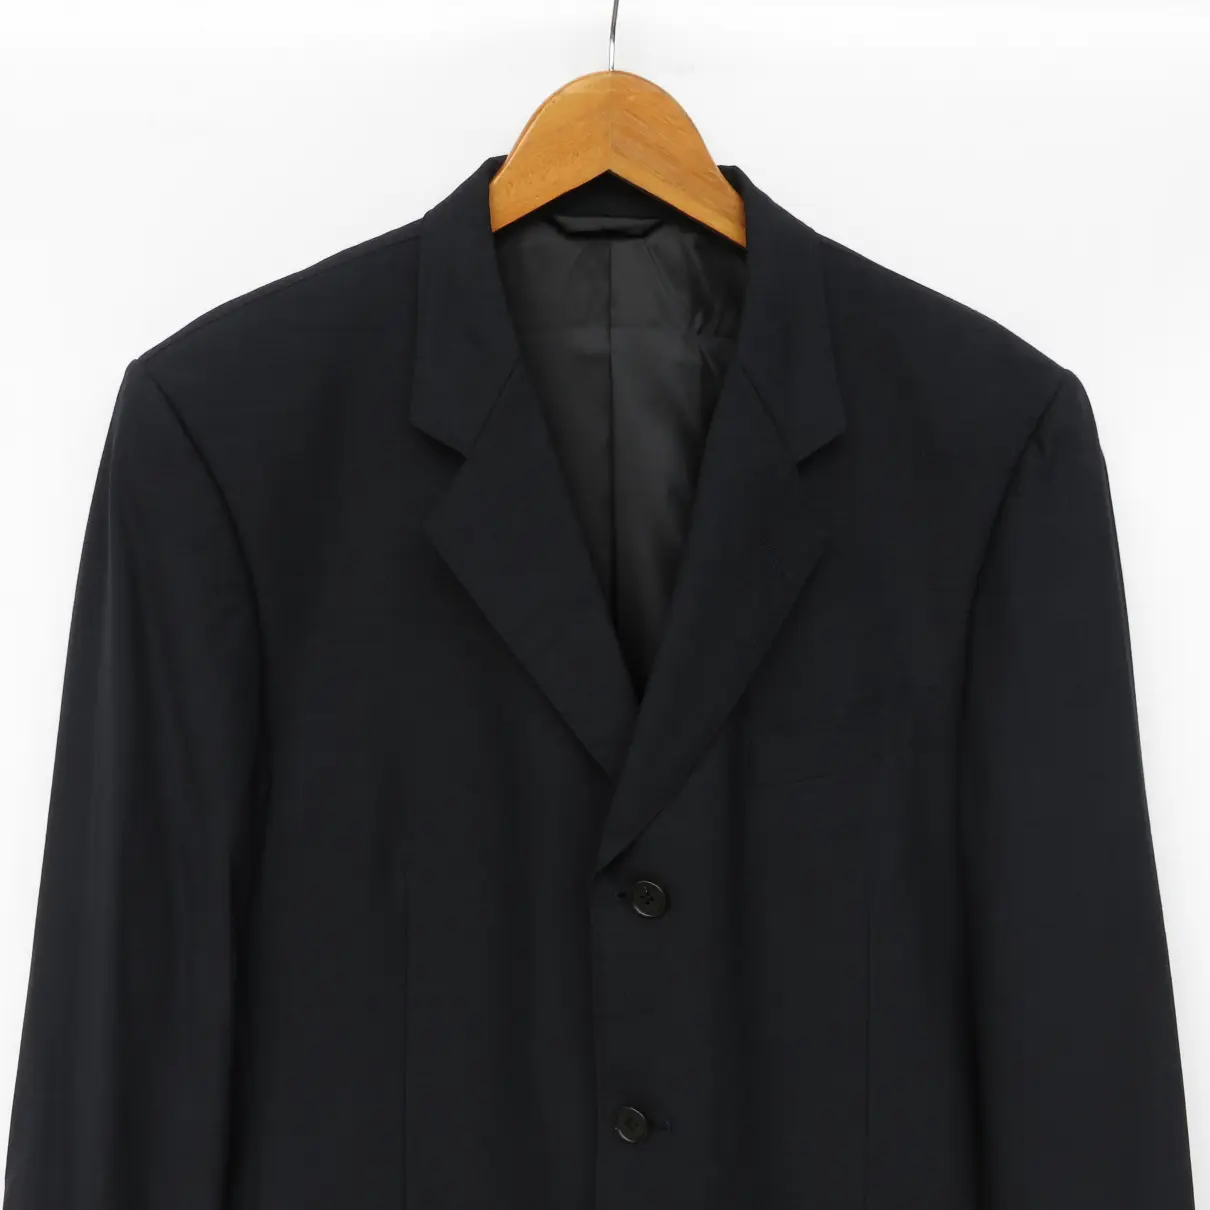 Buy Yohji Yamamoto Jacket online